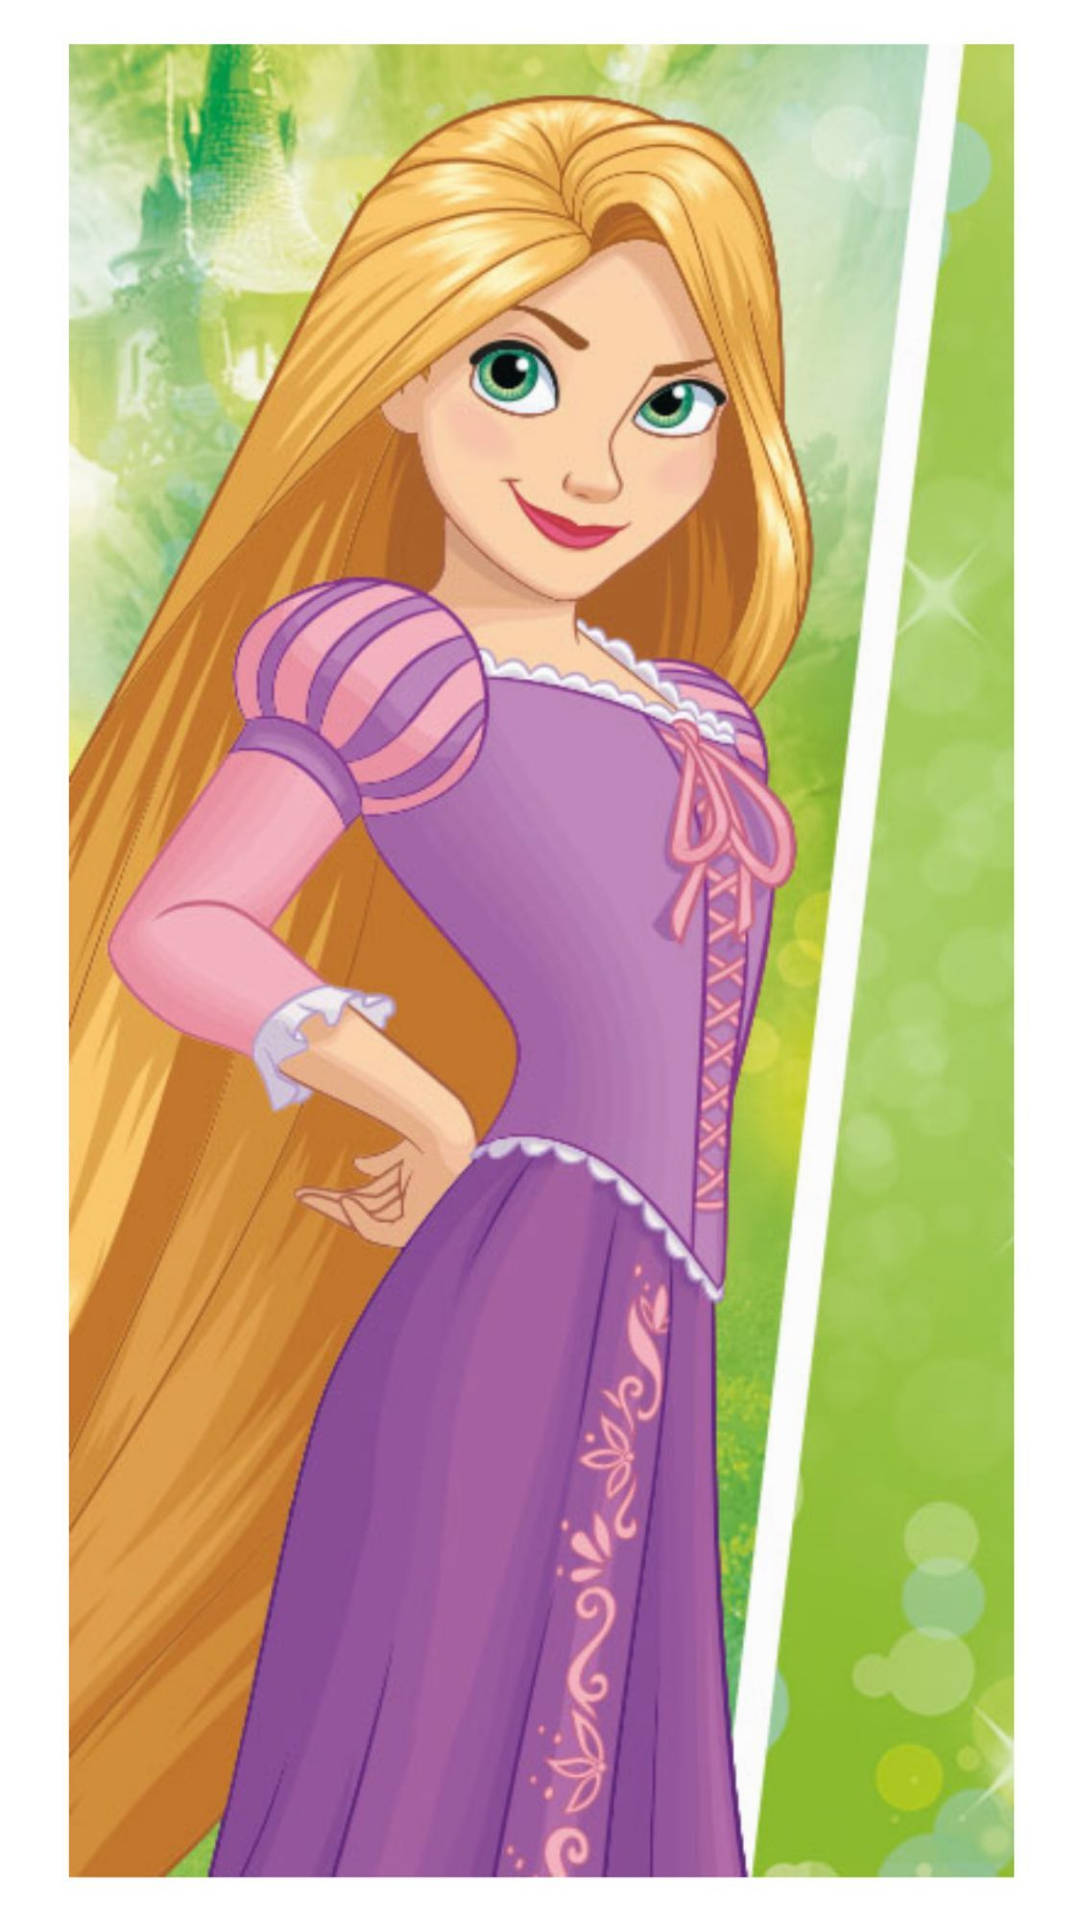 Descubrela Belleza Y La Inocencia De La Infancia Con Esta Linda Imagen Estética De Las Princesas De Disney. Fondo de pantalla